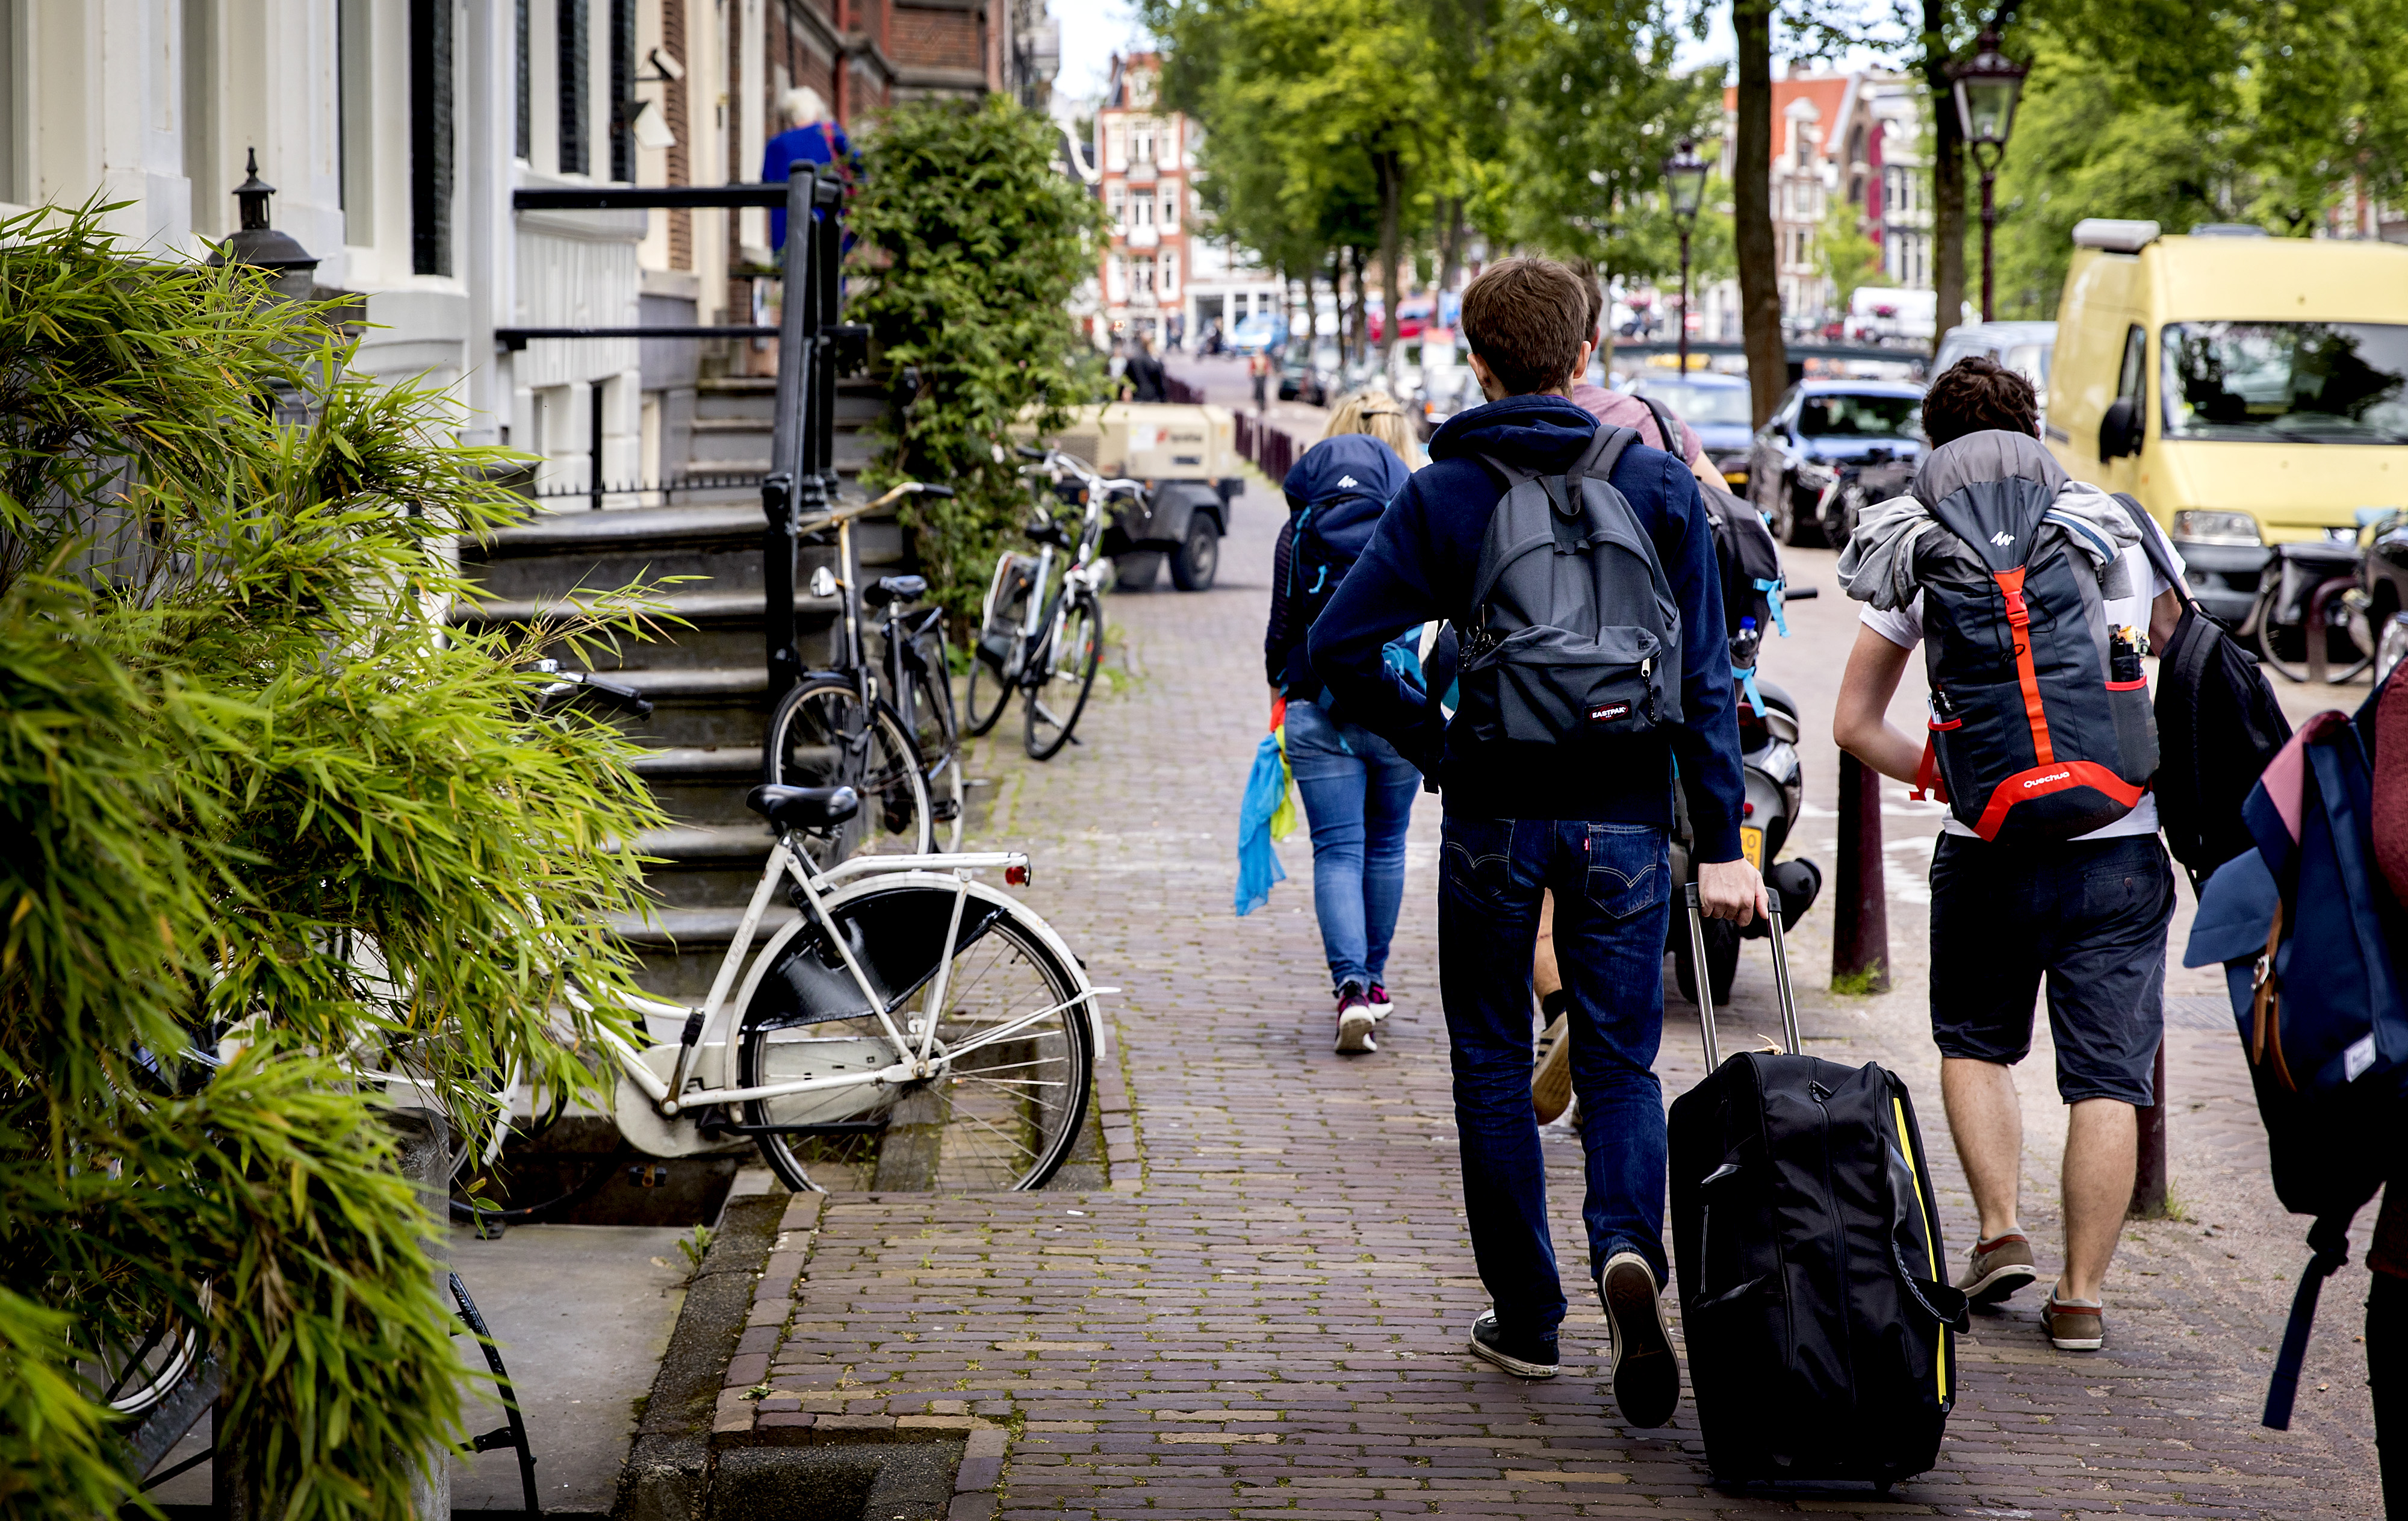 2016-06-16 11:24:14 AMSTERDAM - Toeristen met rolkoffers op de grachten in Amsterdam. Rolkoffers zijn een van de problemen van toenemende populariteit van AirBnB. ANP KOEN VAN WEEL